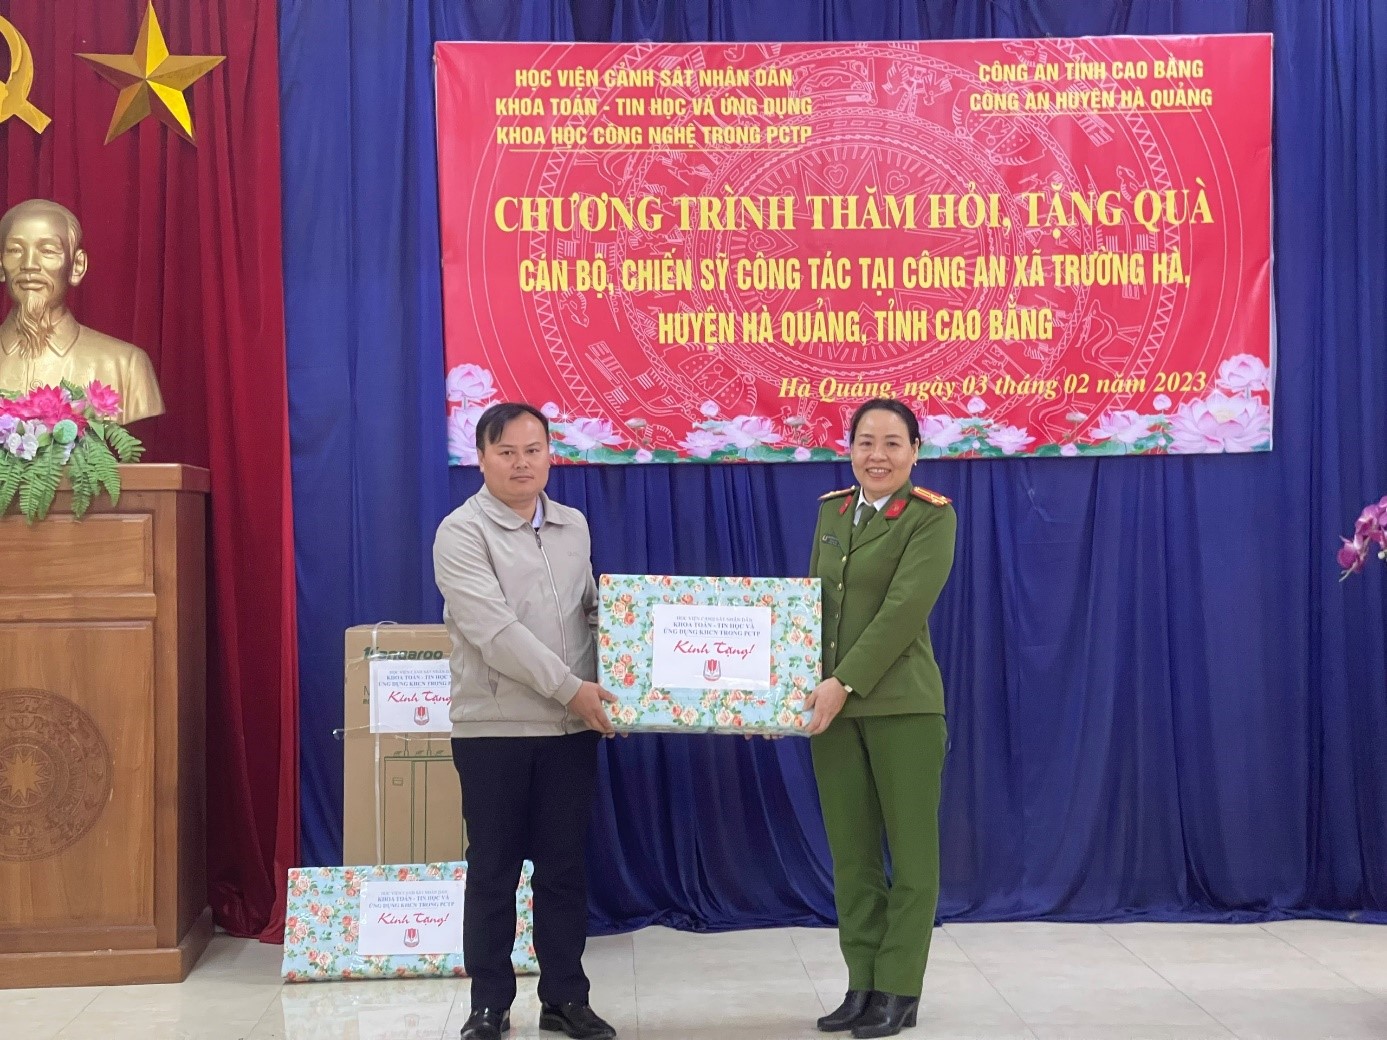 Khoa Toán - Tin học và Ứng dụng KHCN trong PCTP tặng quà lưu niệm Đảng ủy, Ủy ban nhân dân xã Trường Hà